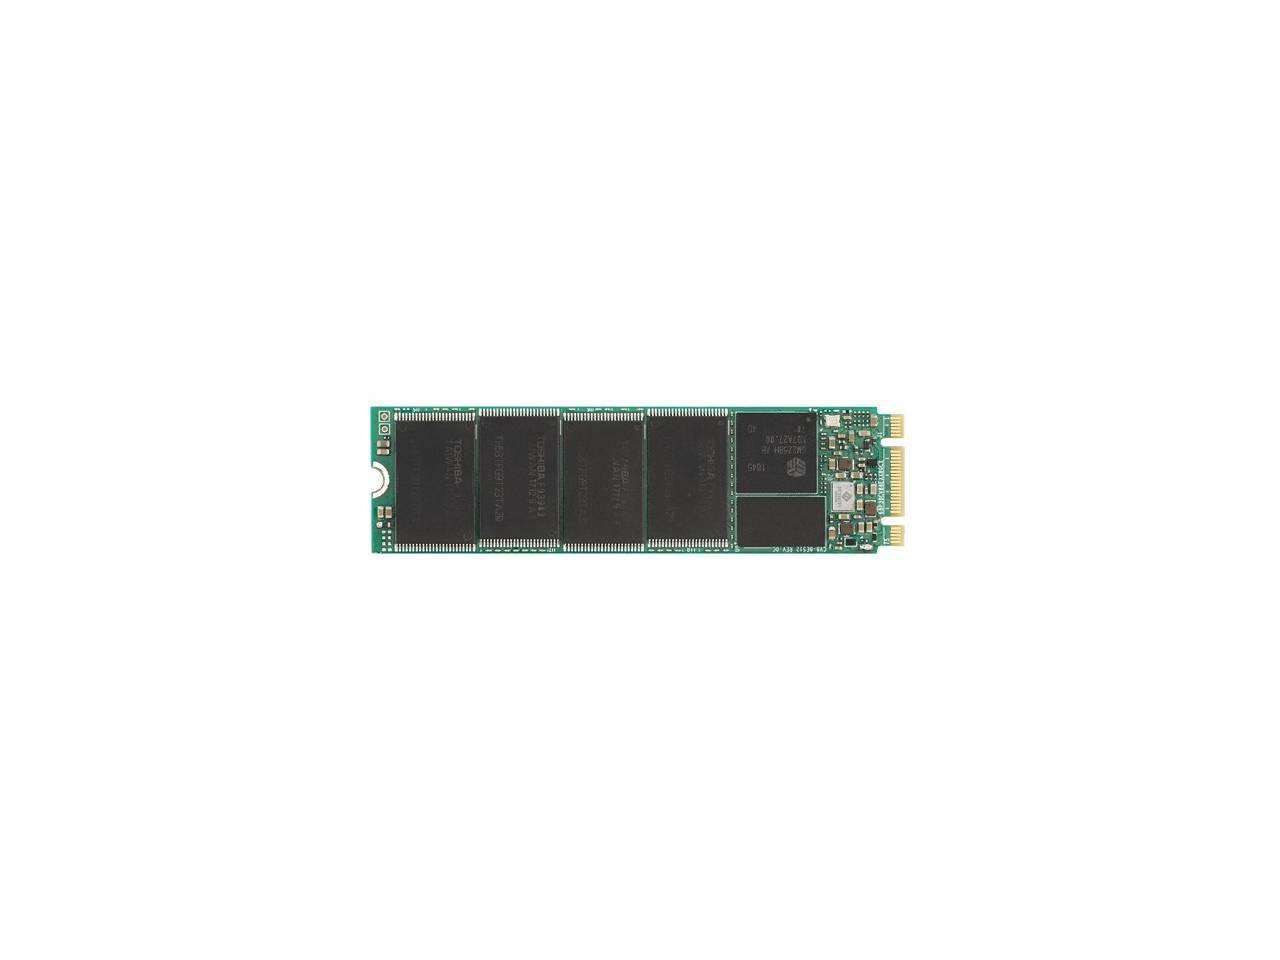 Plextor M8VG 256GB M.2 2280 SATA3 Solid State Drive (TLC)